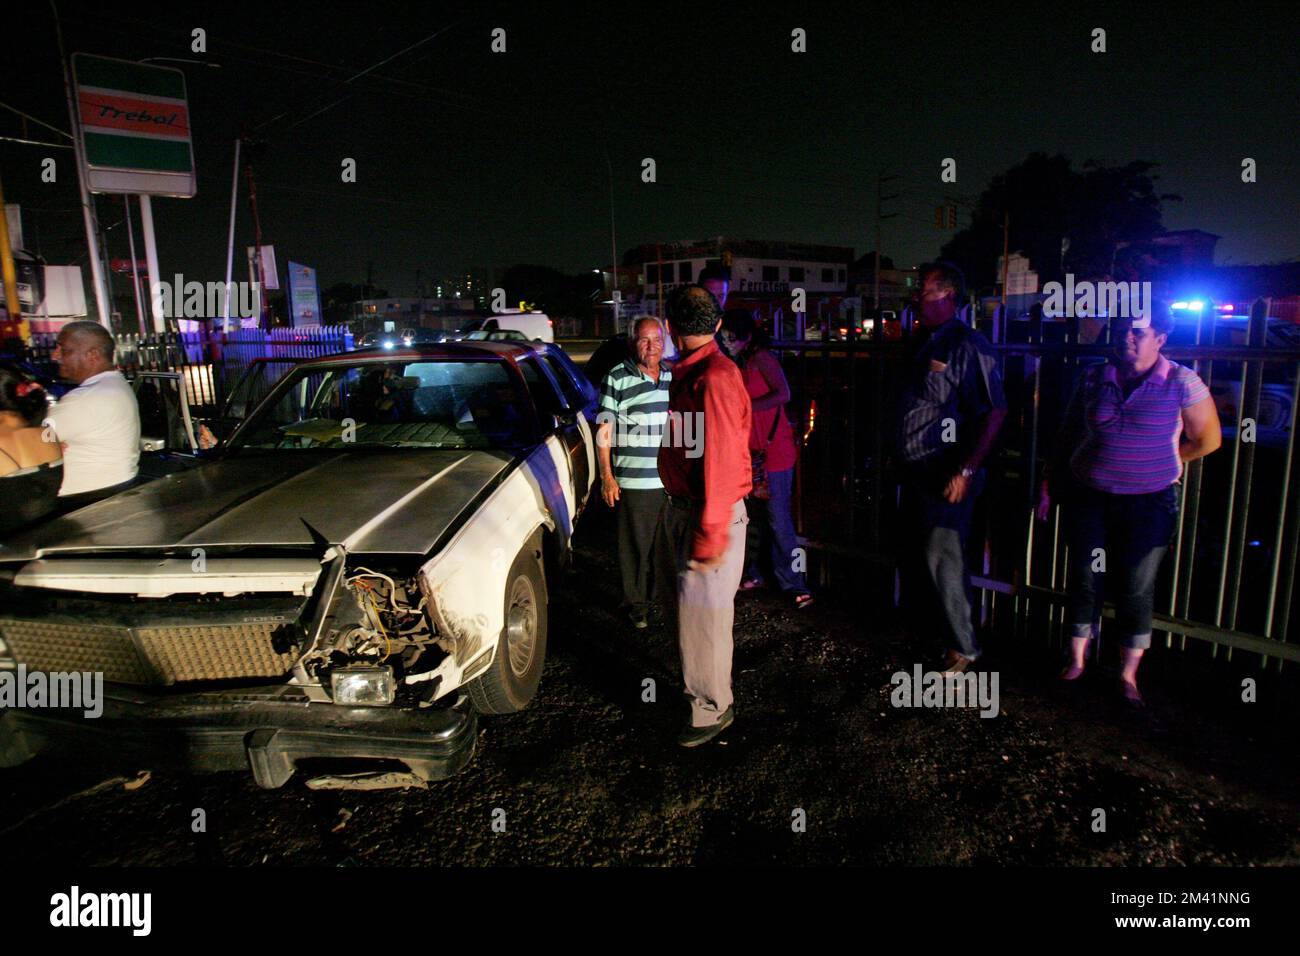 Non exclusif: Maracaibo-Venezuela-23-03-2010- Un groupe de personnes attendent sur une voiture écrasée pendant une panne dans la ville de Maracaibo, capitale du pétrole Stat Banque D'Images